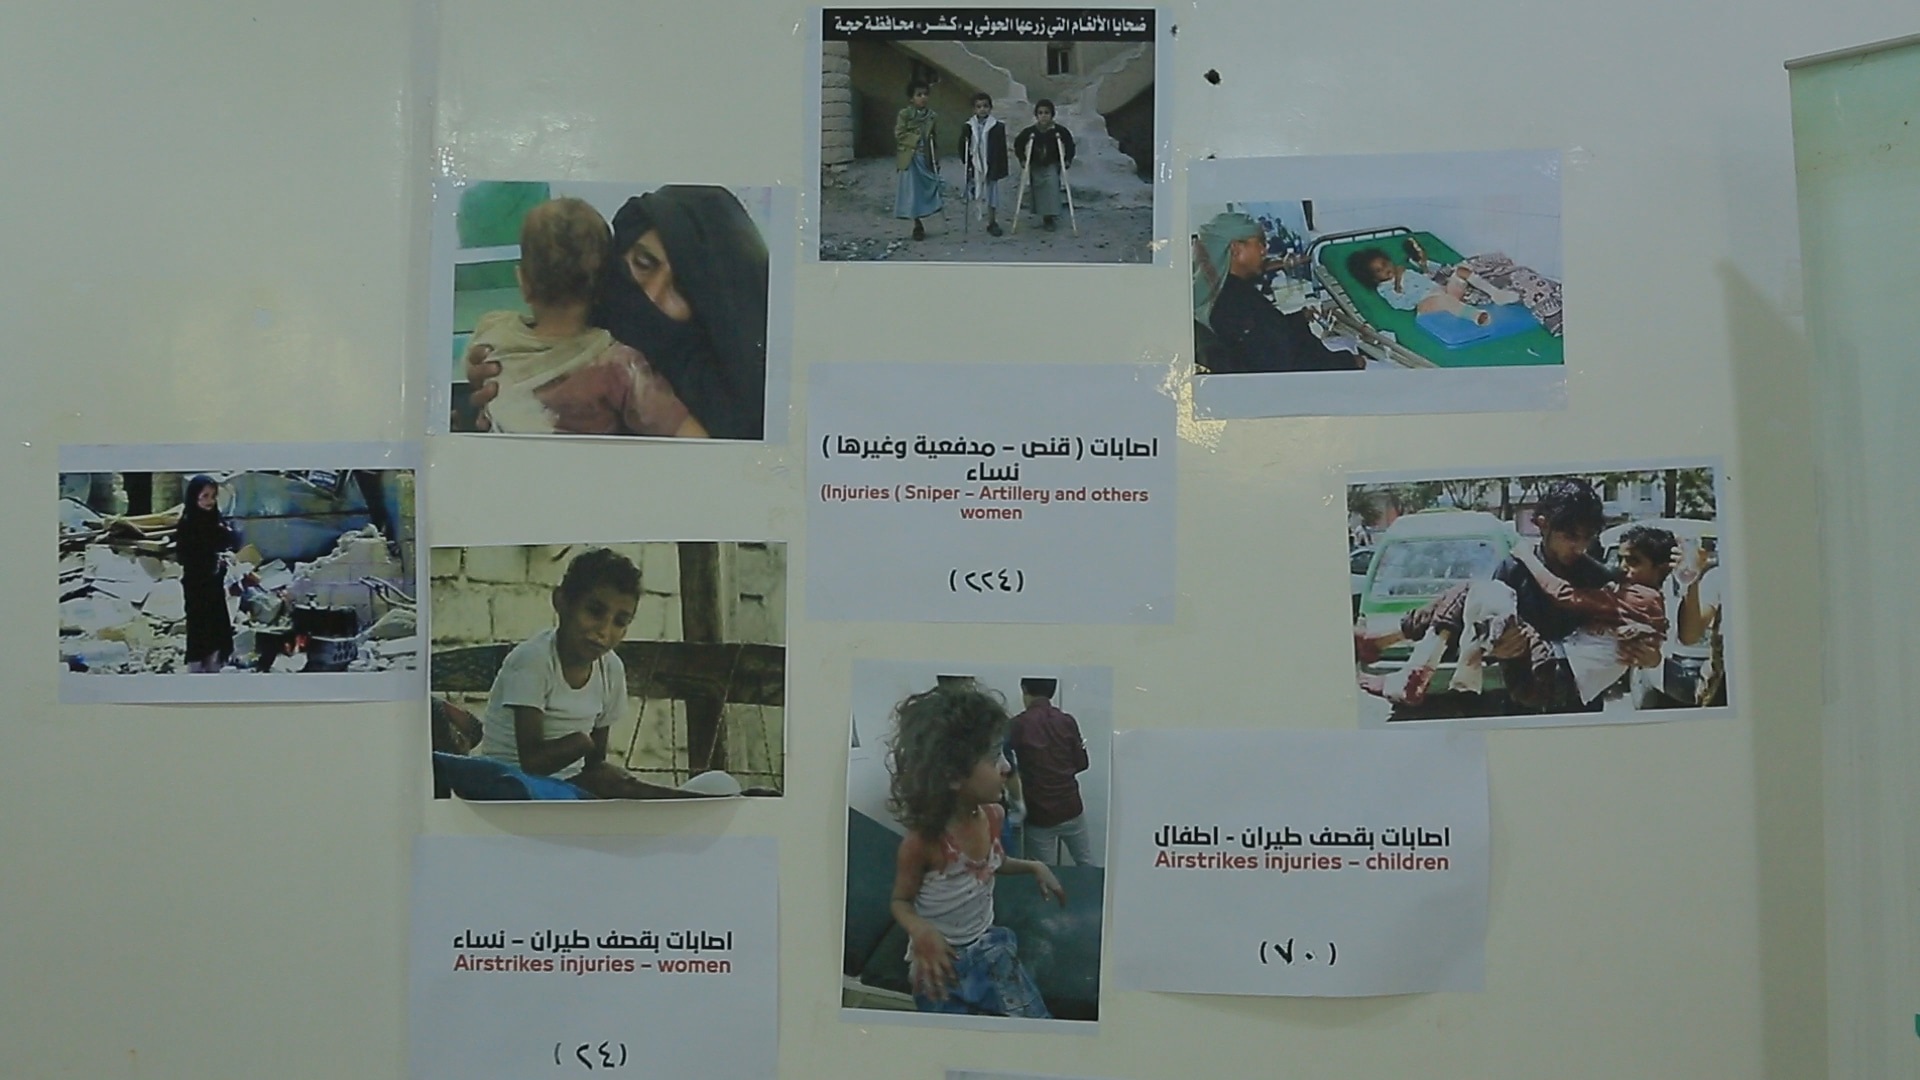 معرض مصور في مأرب يوثق أبرز انتهاكات مليشيات الحوثي بحق نساء وأطفال تهامة